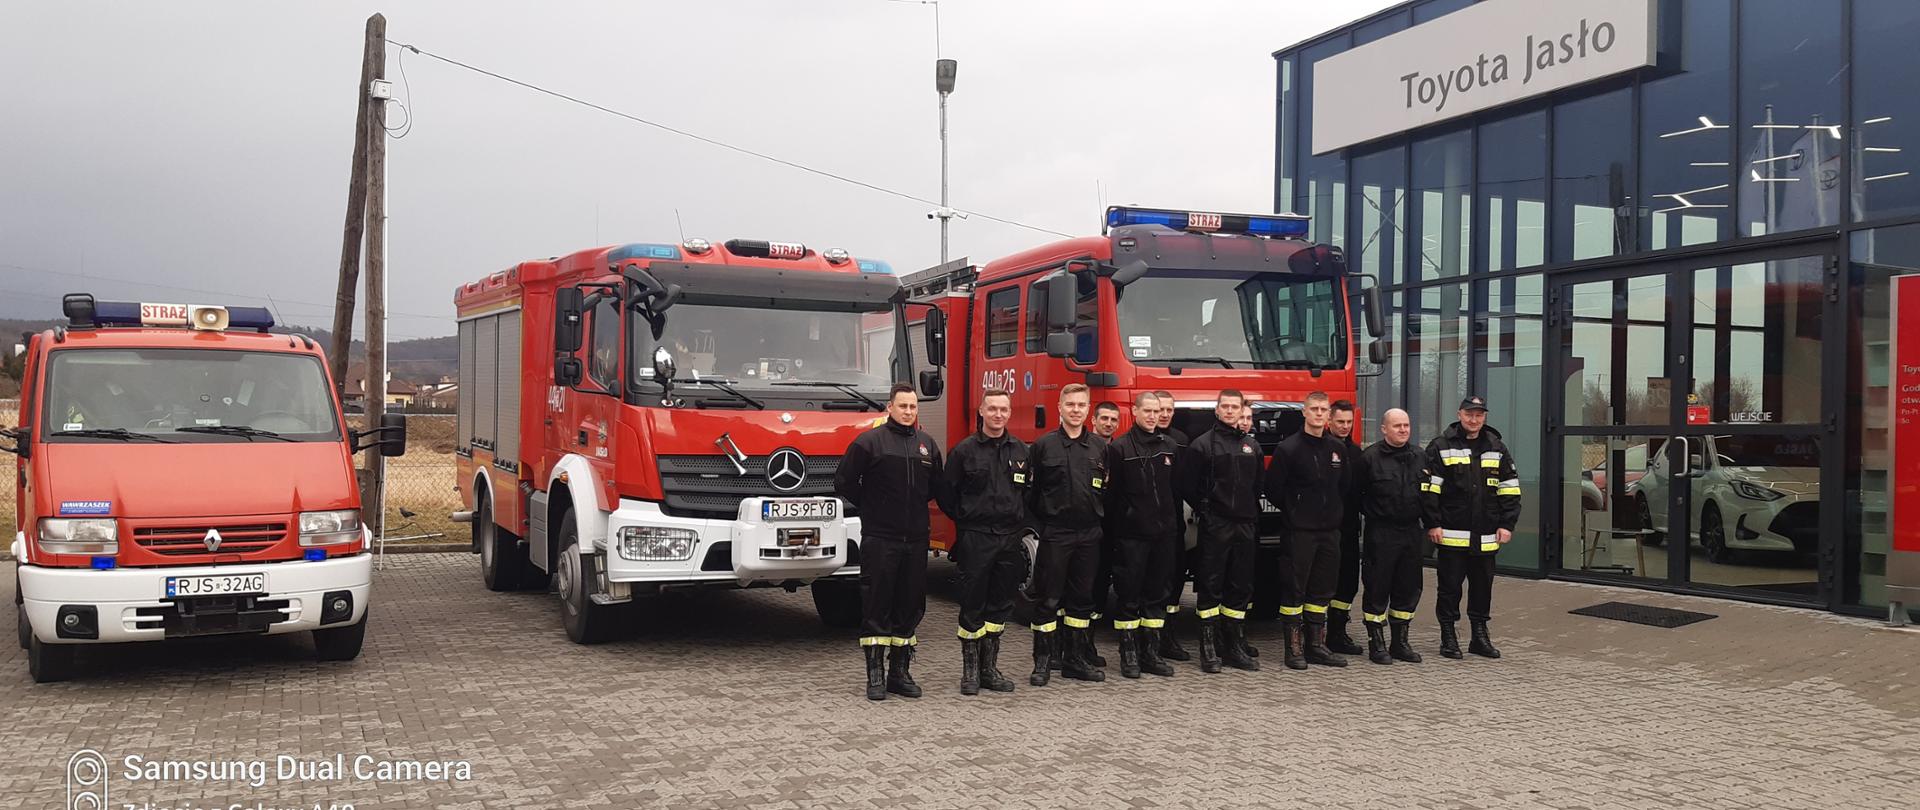 Na zdjęciu strażacy z PSP w Jaśle podczas szkolenia w salonie Toyoty zdjęcie grupowe na dworze